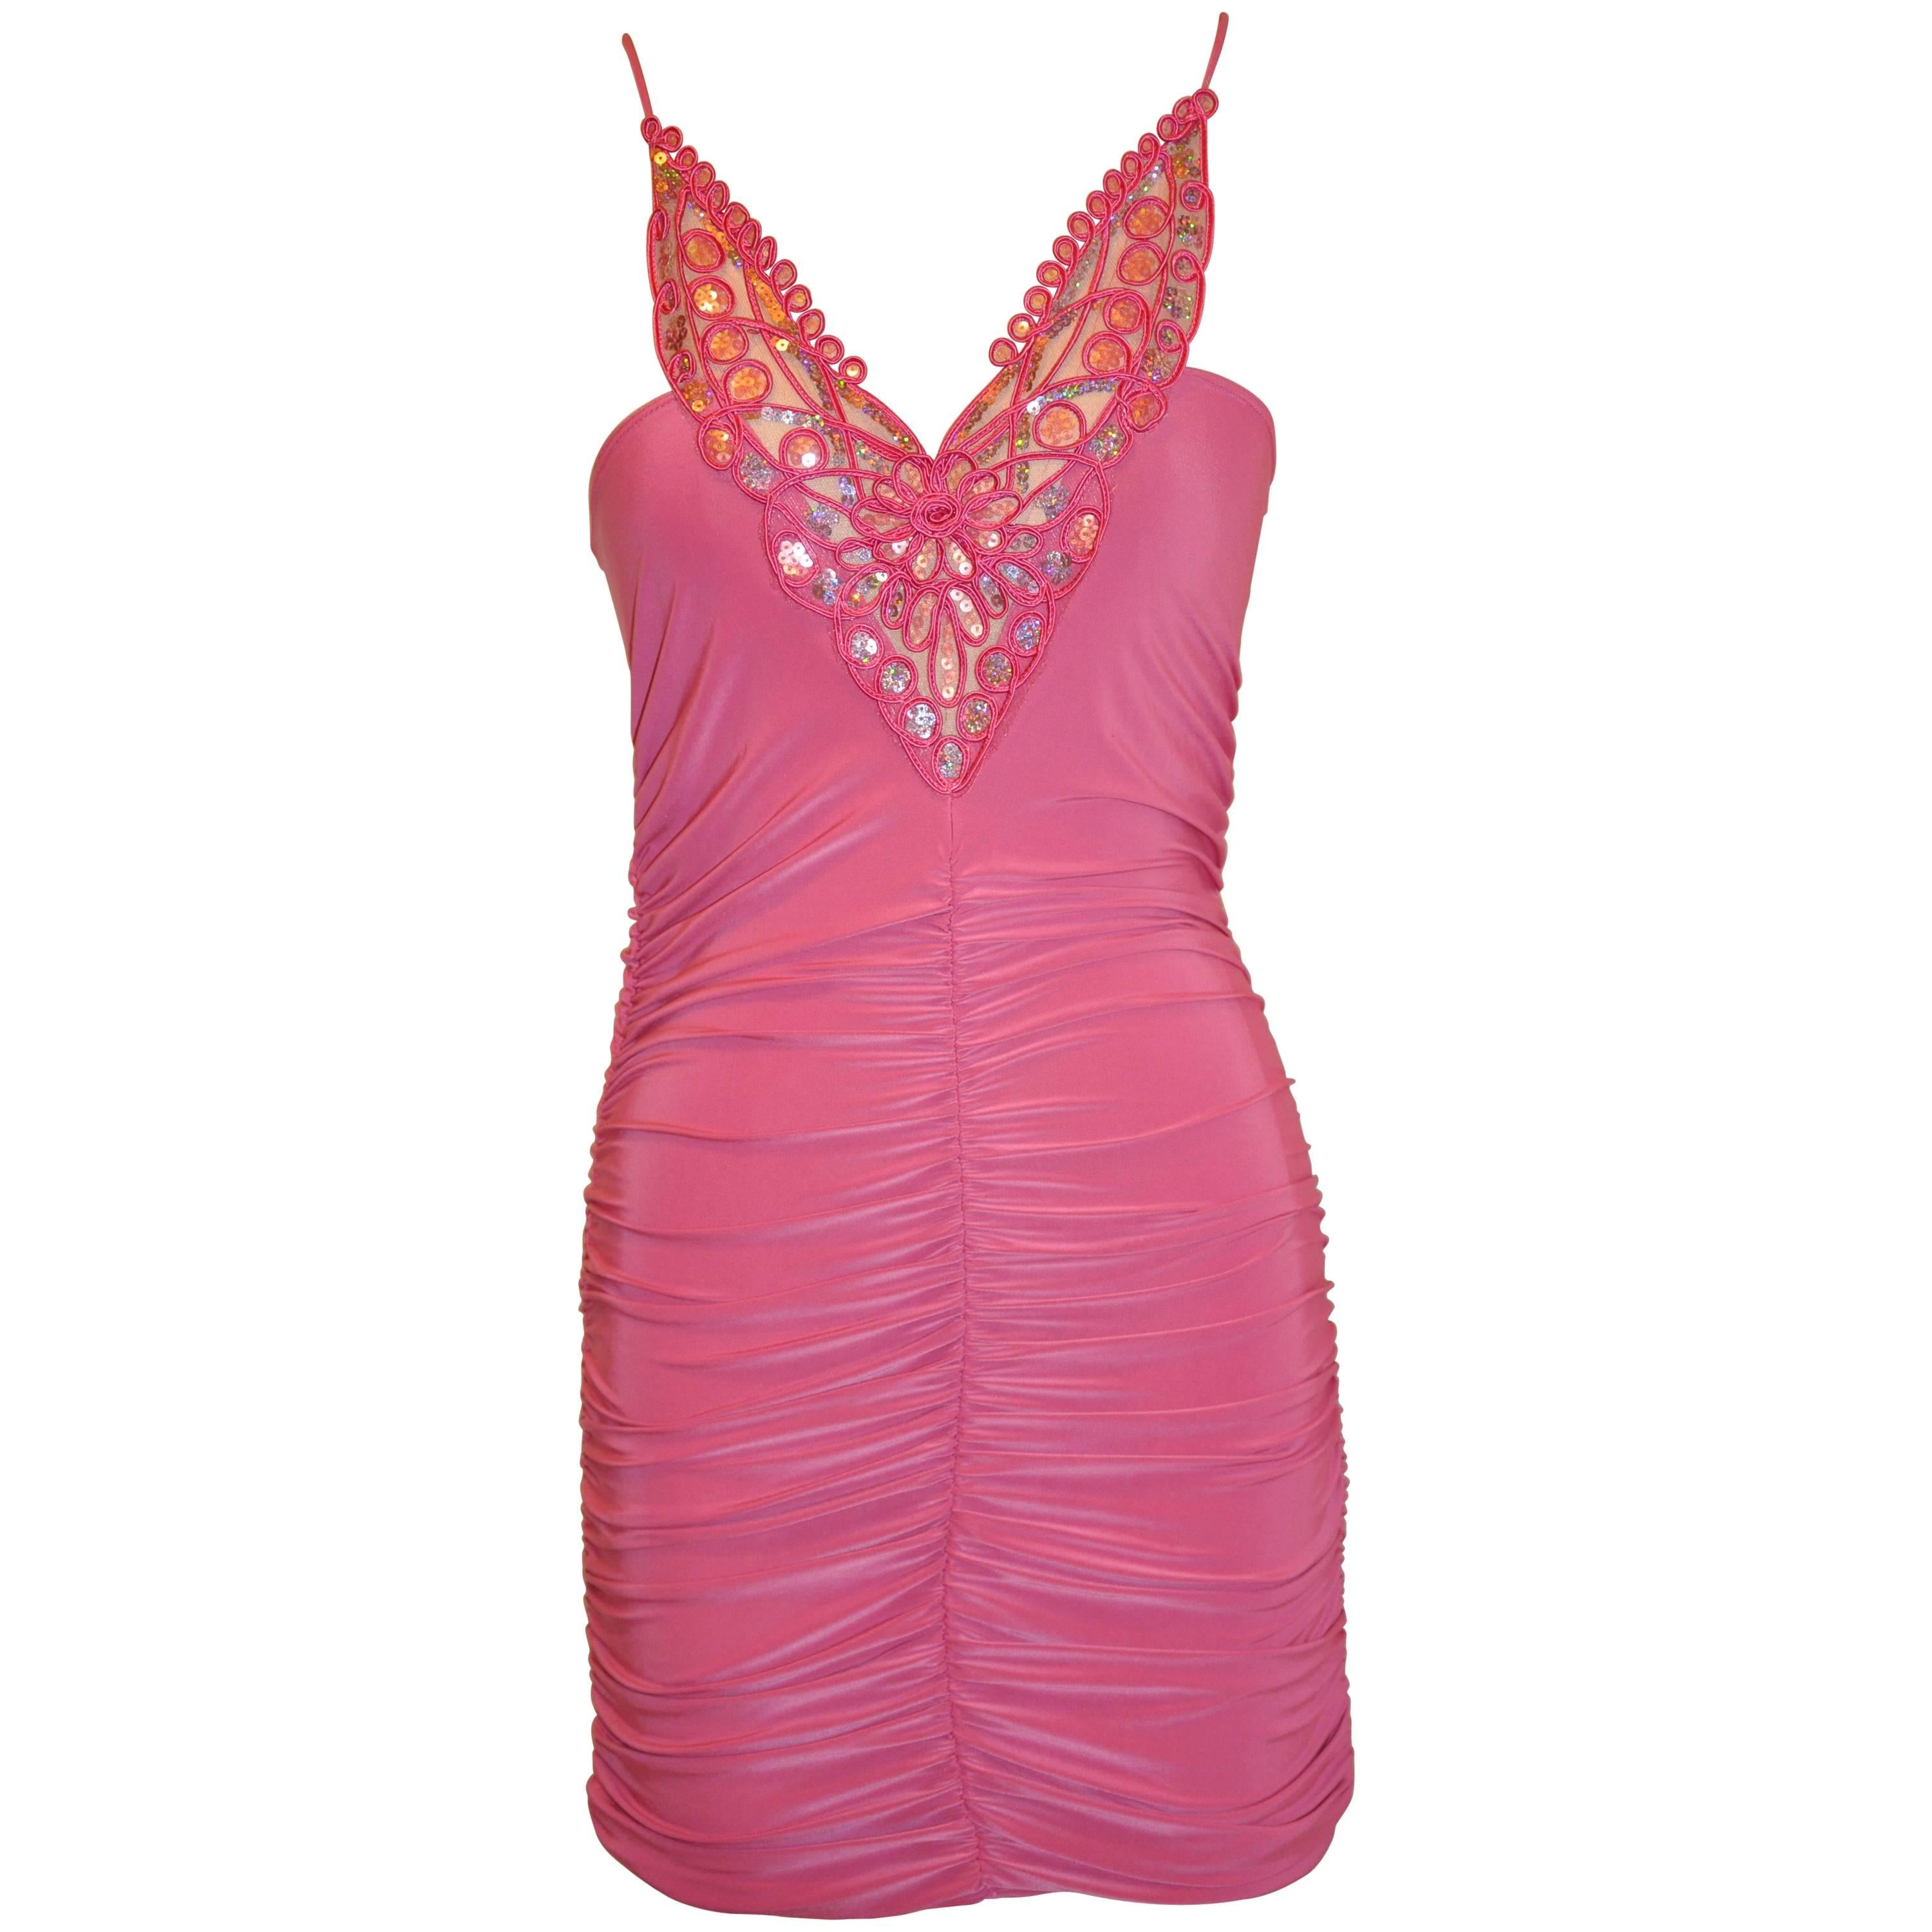 Moschino Weiches Fuchsia-Kleid mit Pailletten, das körperbetont wirkt